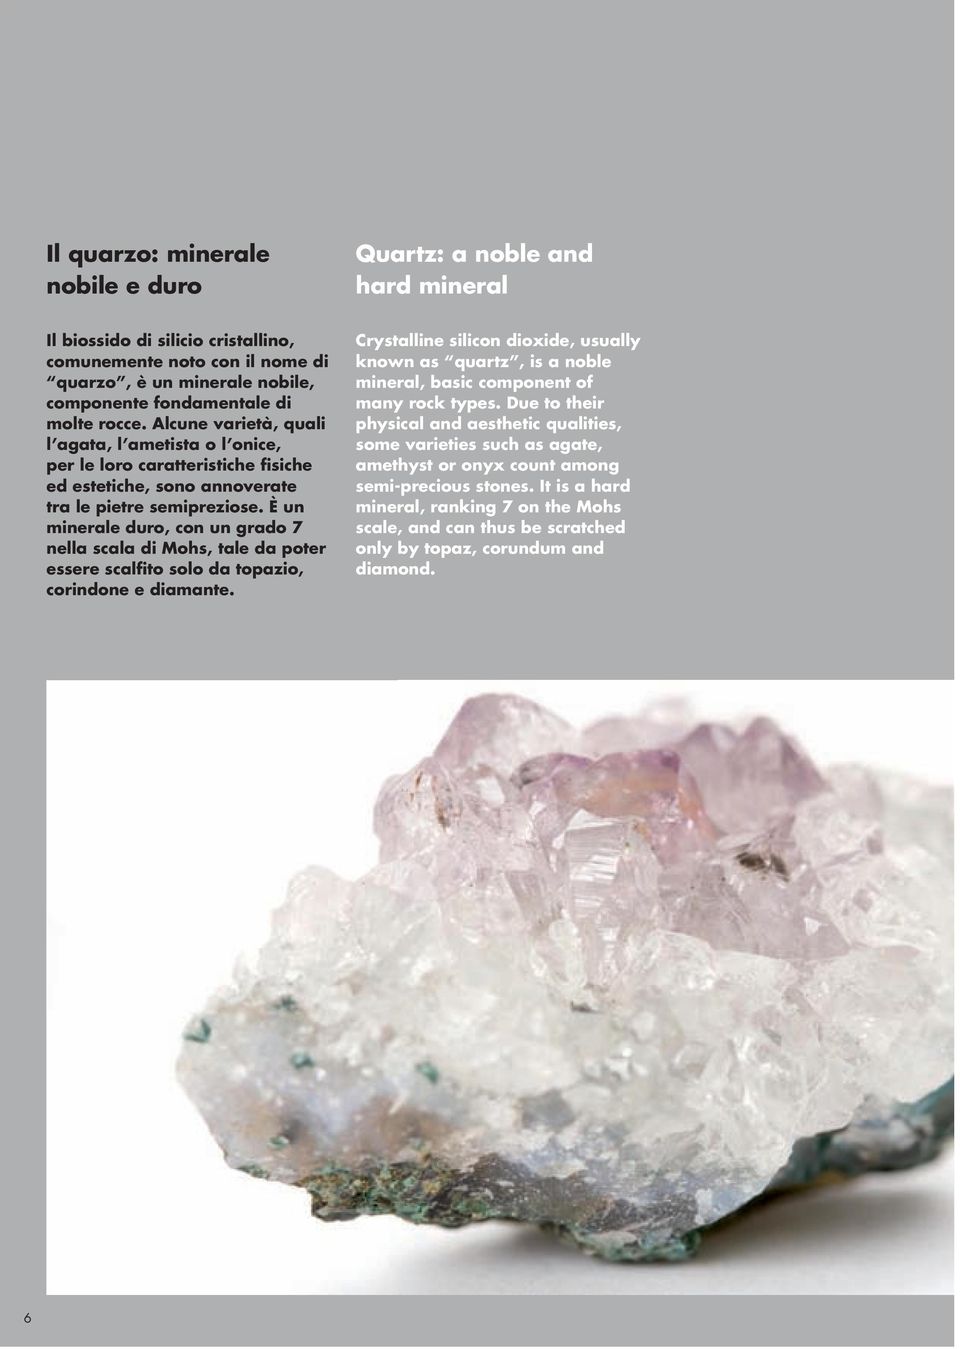 È un minerale duro, con un grado 7 nella scala di Mohs, tale da poter essere scalfito solo da topazio, corindone e diamante.